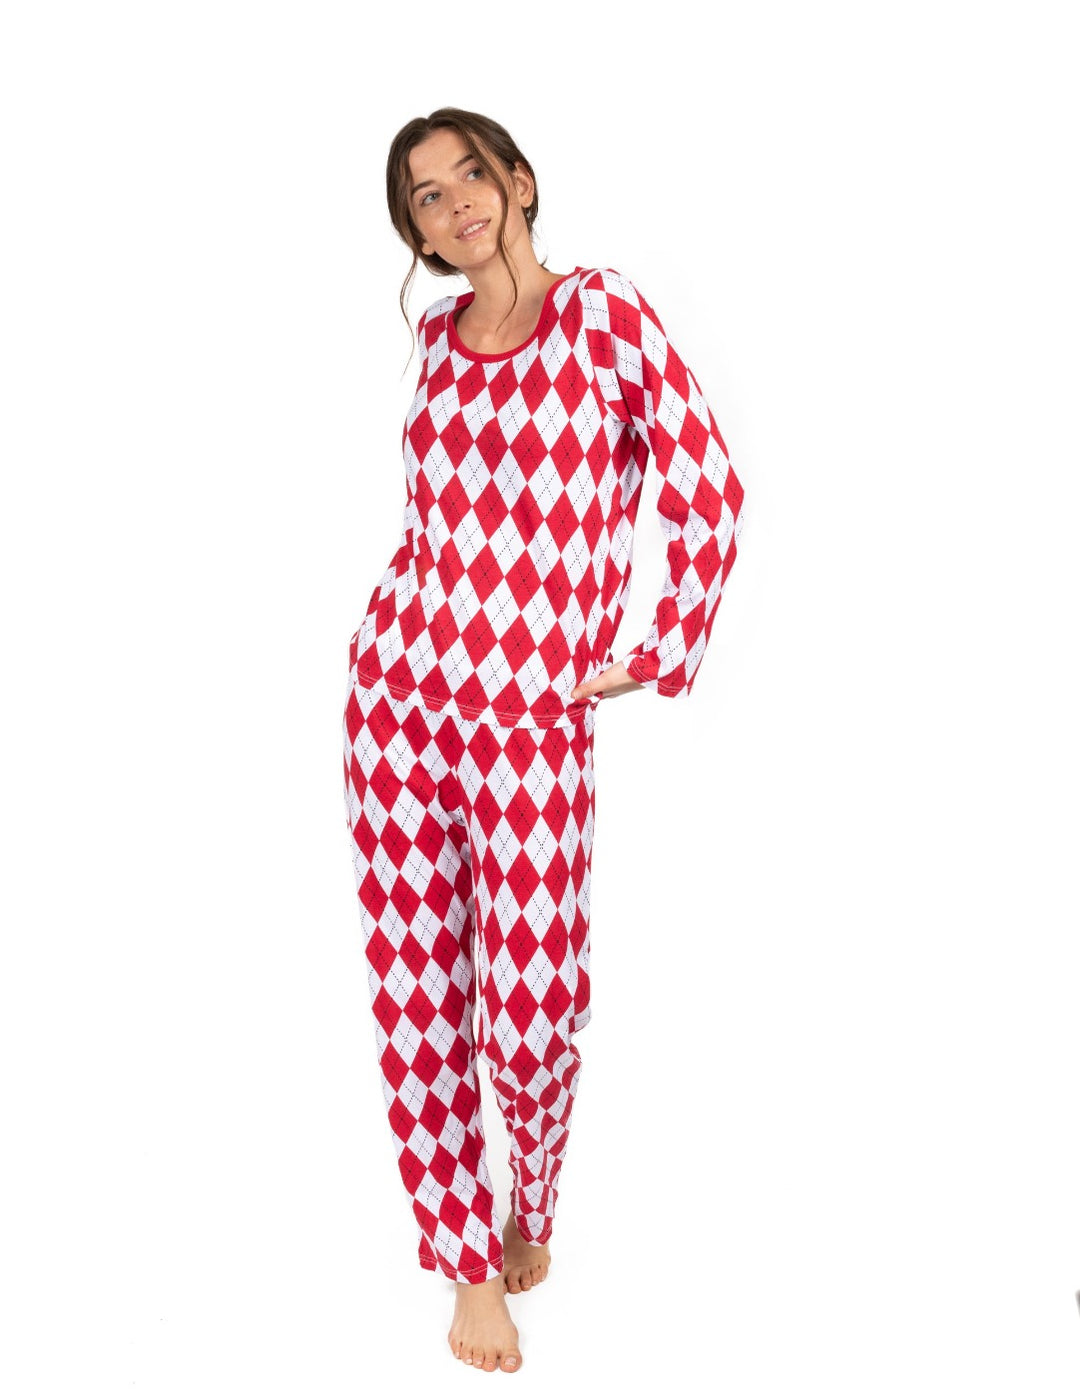 Red and white argyle women's cotton pajama